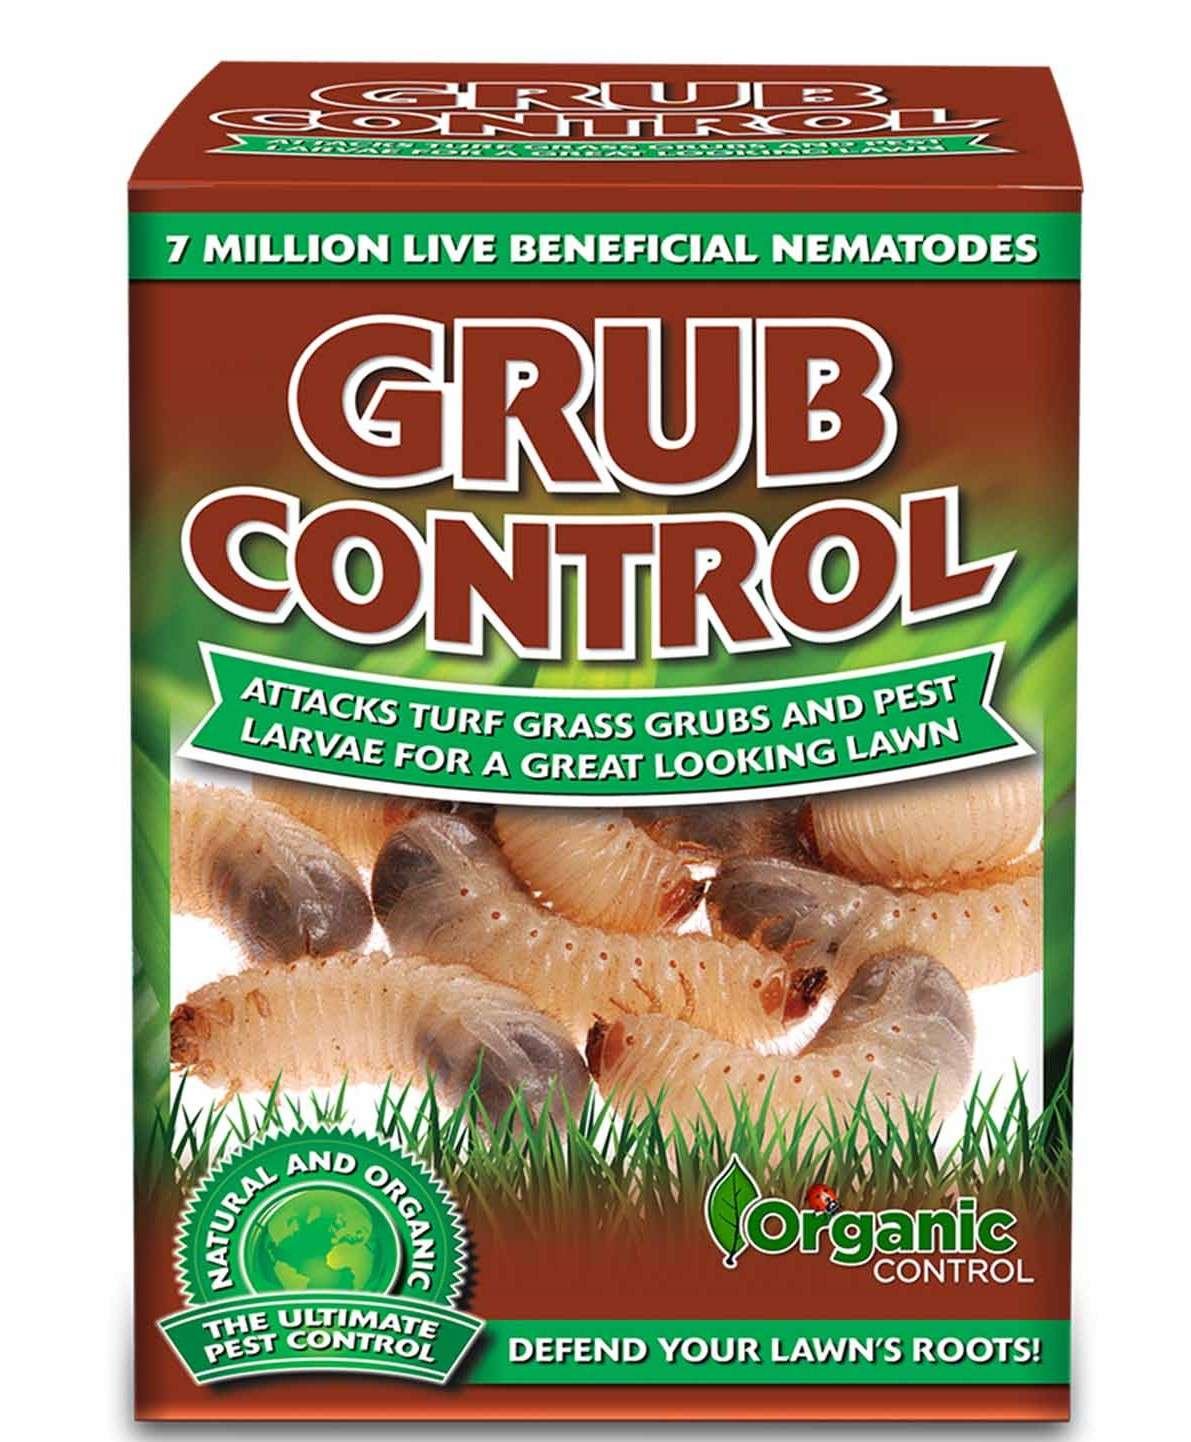 Grub Control by Organic Control